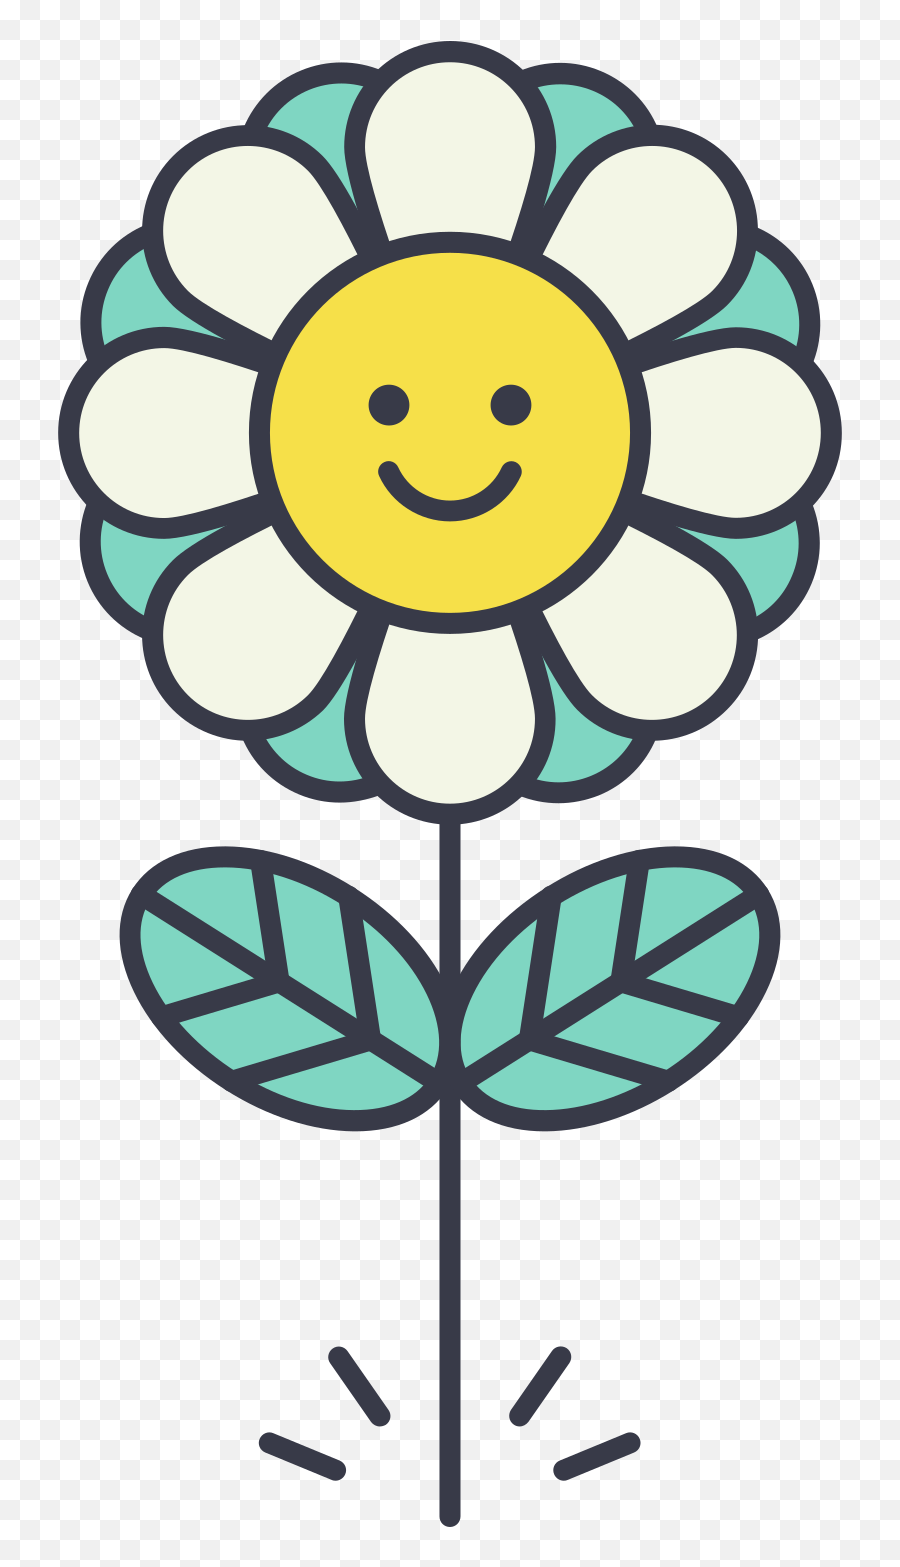 Smile Emoji Clipart Illustrations U0026 Images In Png And Svg,Flower Face Emoticon Kawaii